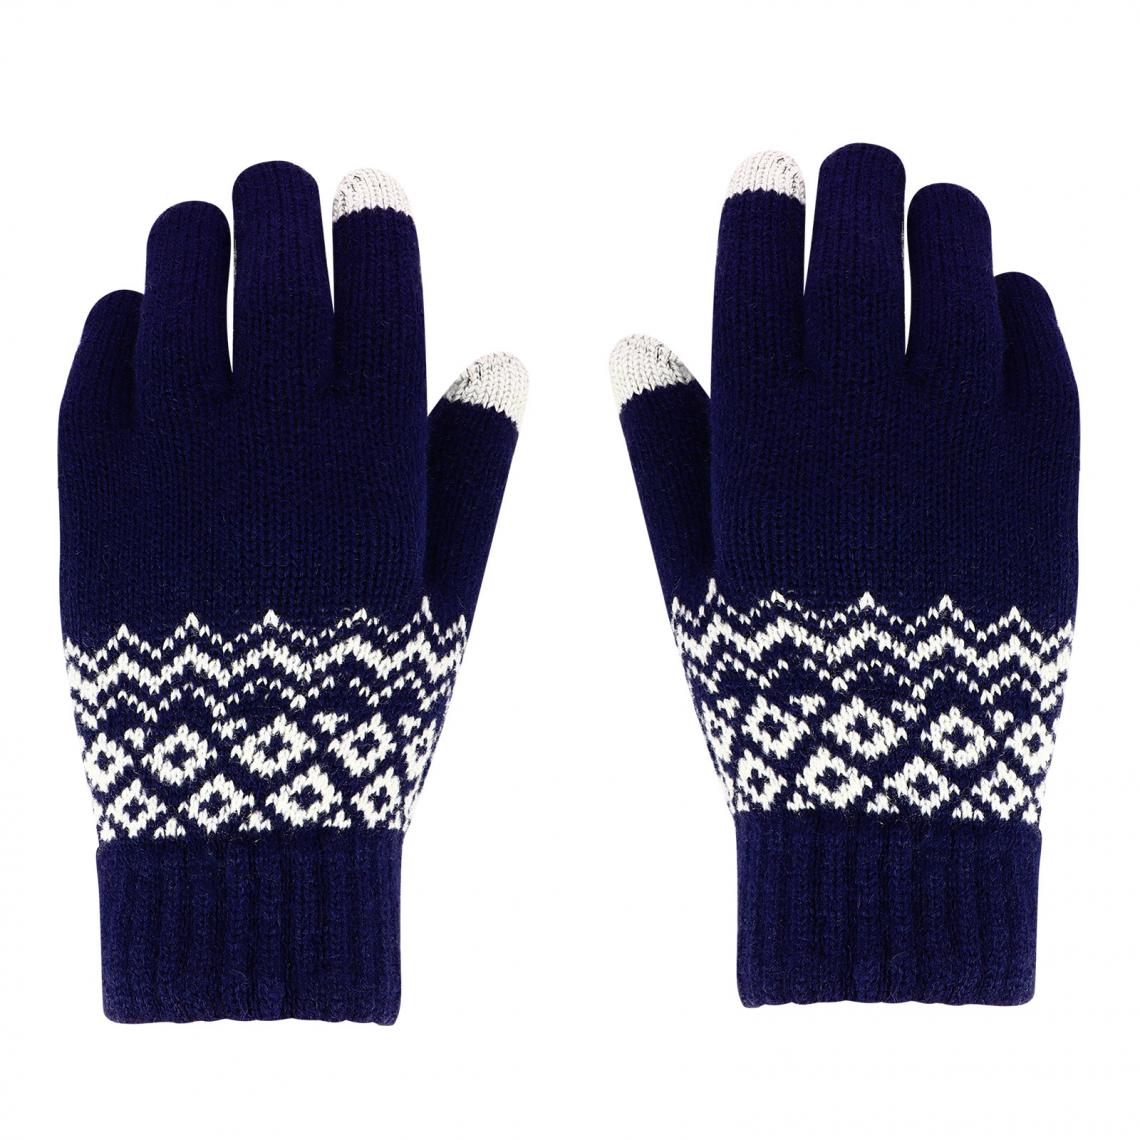 Avizar - Gants Tactiles motif hivernal bleu nuit - Autres accessoires smartphone